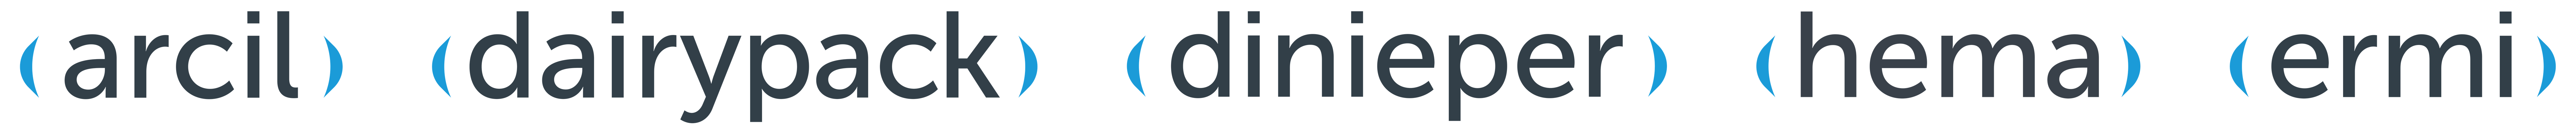 synerlink aftermarket logos